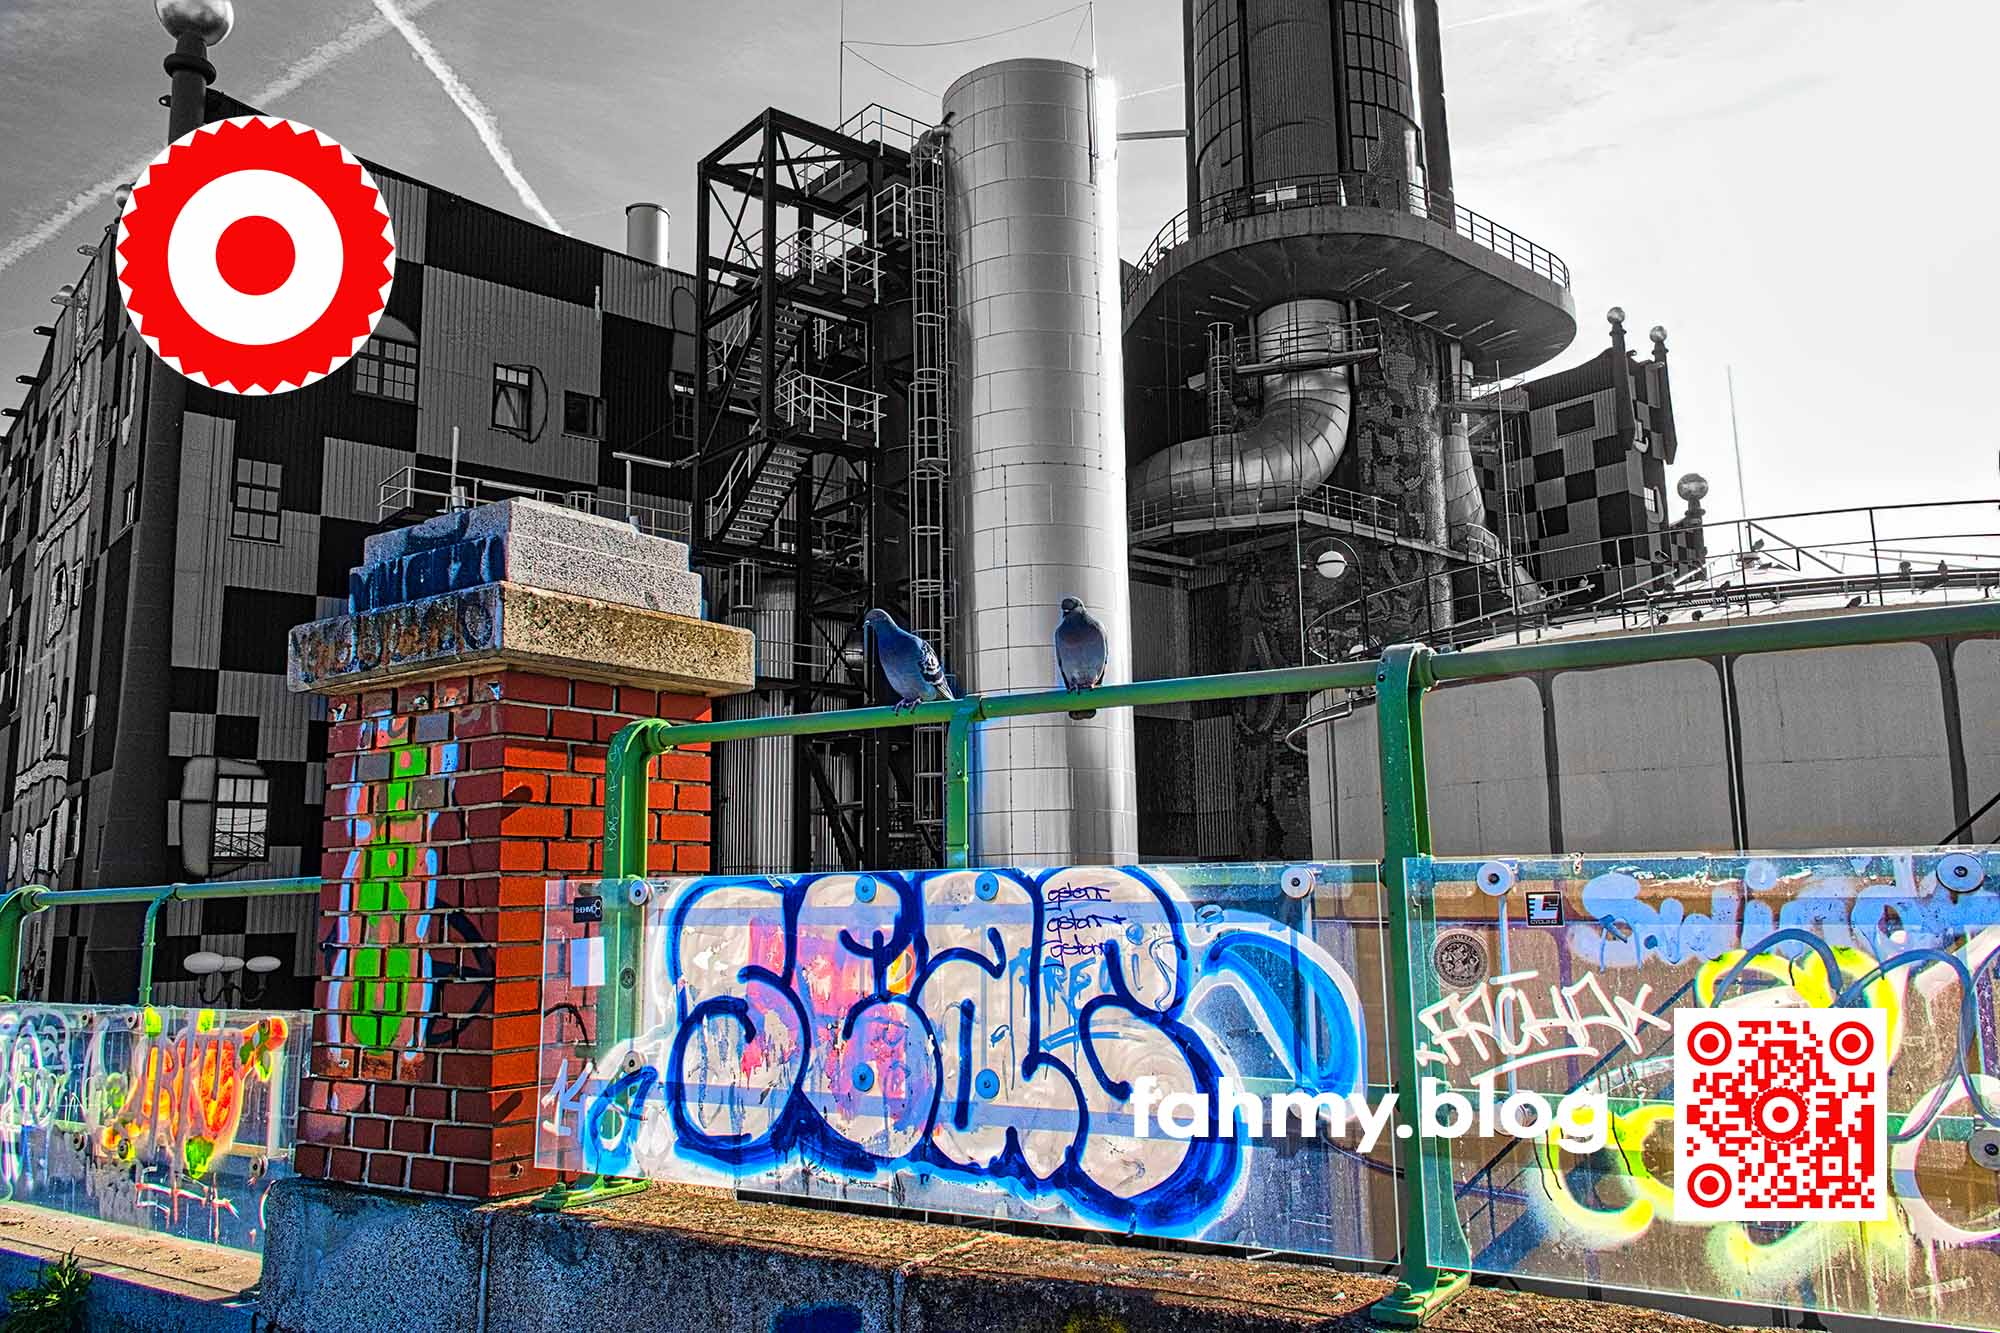 Das Bild zeigt die Müllverbrennungsanlage der Fernwärme Wien im Hintergrund - in Schwarz-Weiss - hinter einem Geländer, das im Vordergrund des Bildes mit Graffiti beschmiert ist. Der Vordergrund erscheint in grellen Farben. Auf dem Geländer sitzen zwei Tauben. Die Fassade der Müllverbrennungsanlage von dem österreichischen Künstler Friedensreich Hundertwasser gestaltet worden. Das rot-weiß-rote Logo von fahmy.blog ist in der linken oberen Ecke, der QR-Code und Bildunterschrift von fahmy.blog ist in der rechten Ecke zu sehen.